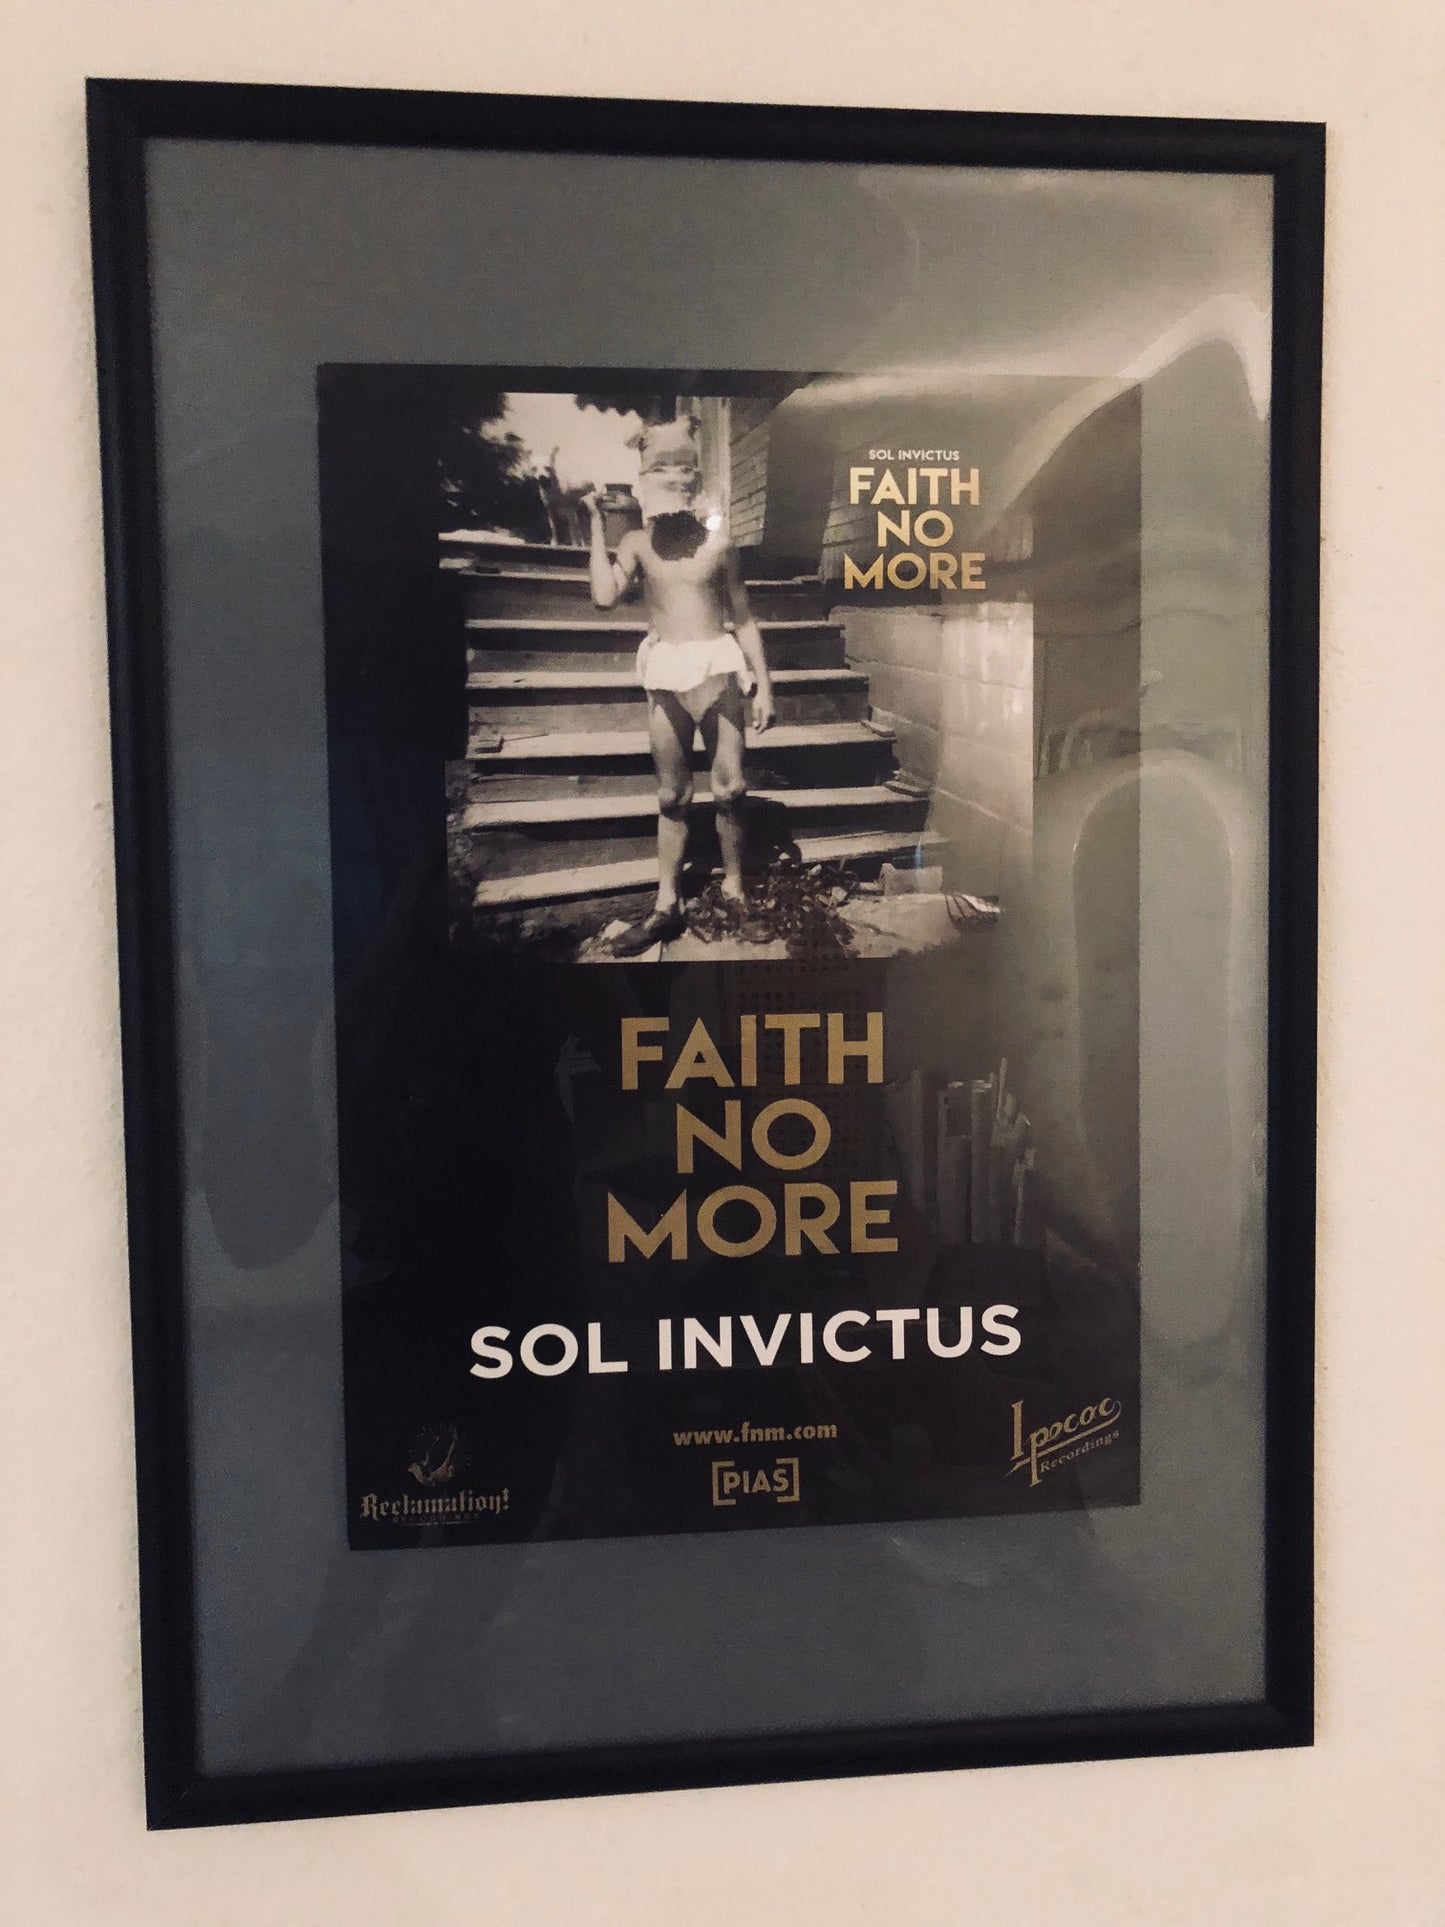 Faith no more - Sol invictus - Poster